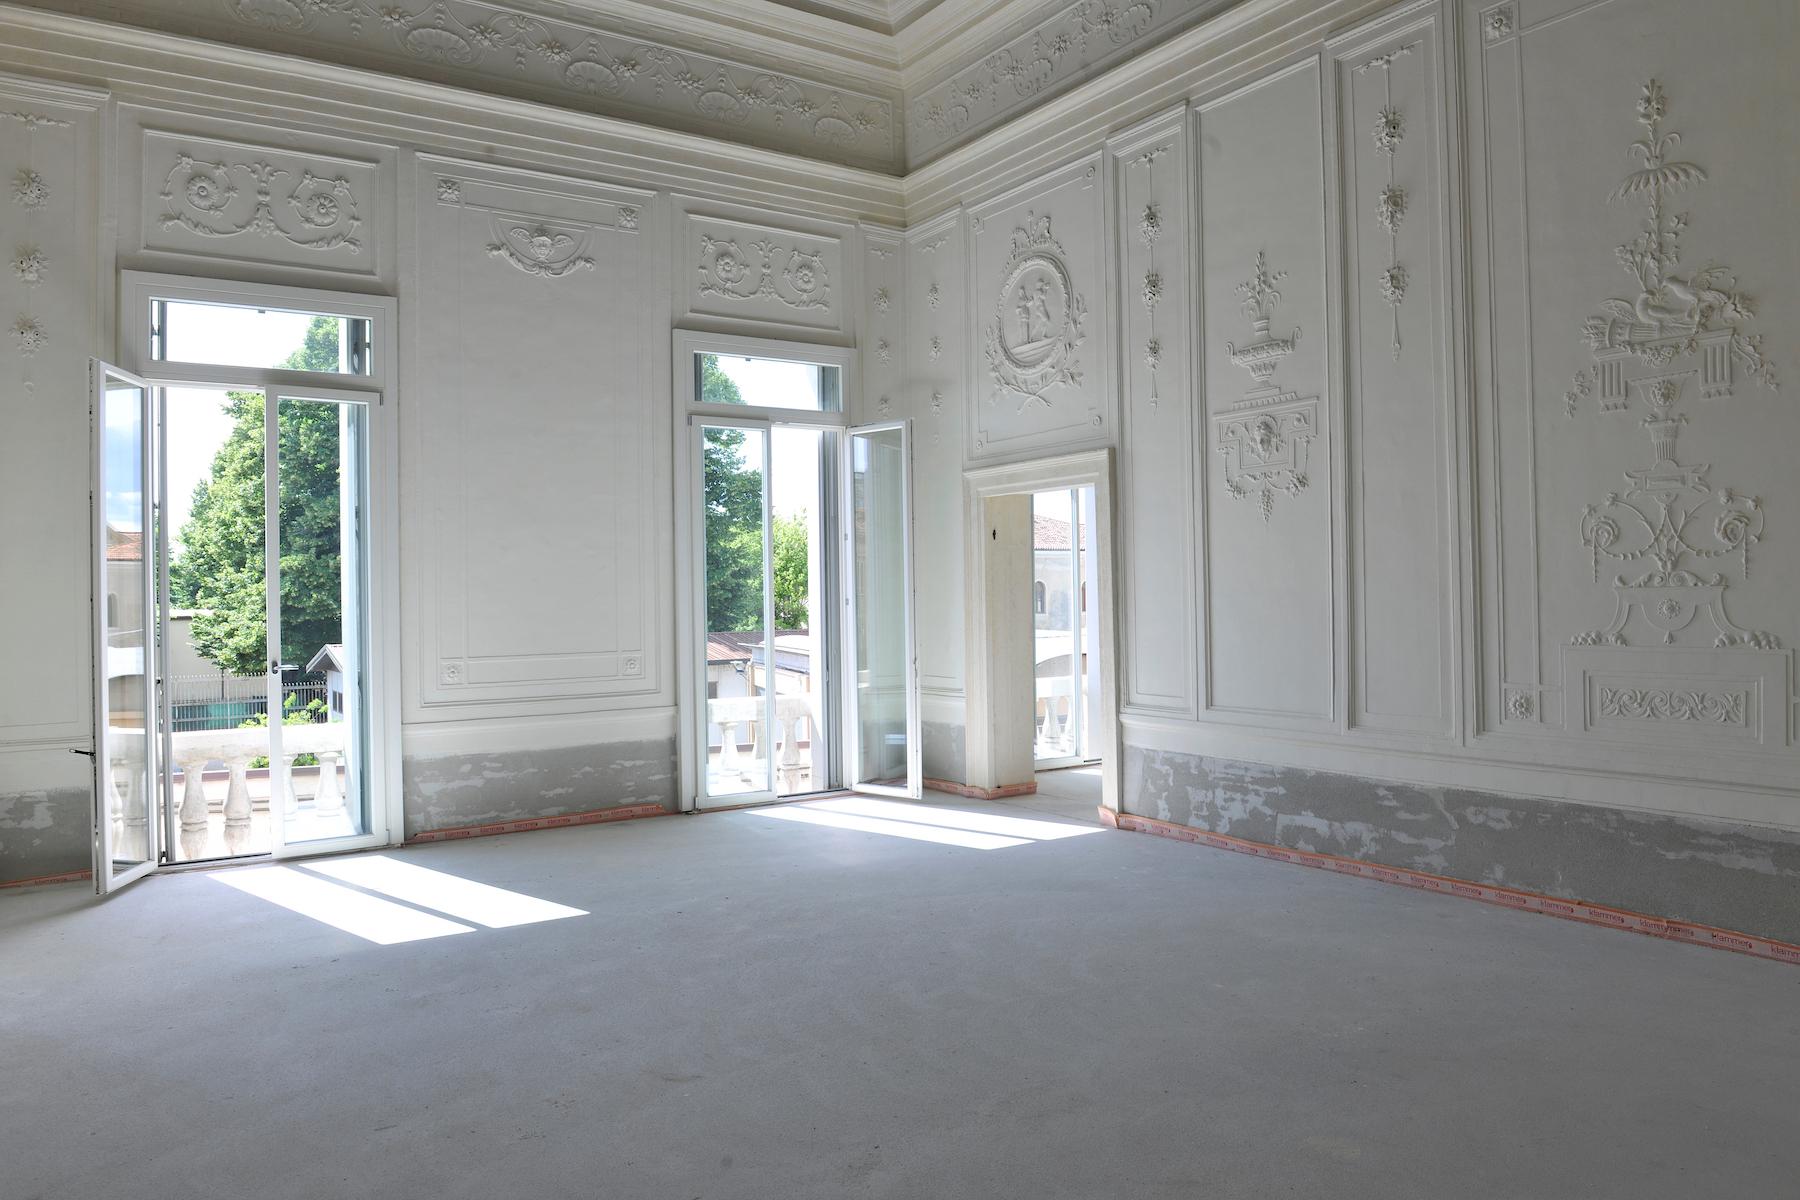 Palazzo Bonin Schiavetto in the heart of Vicenza - 13